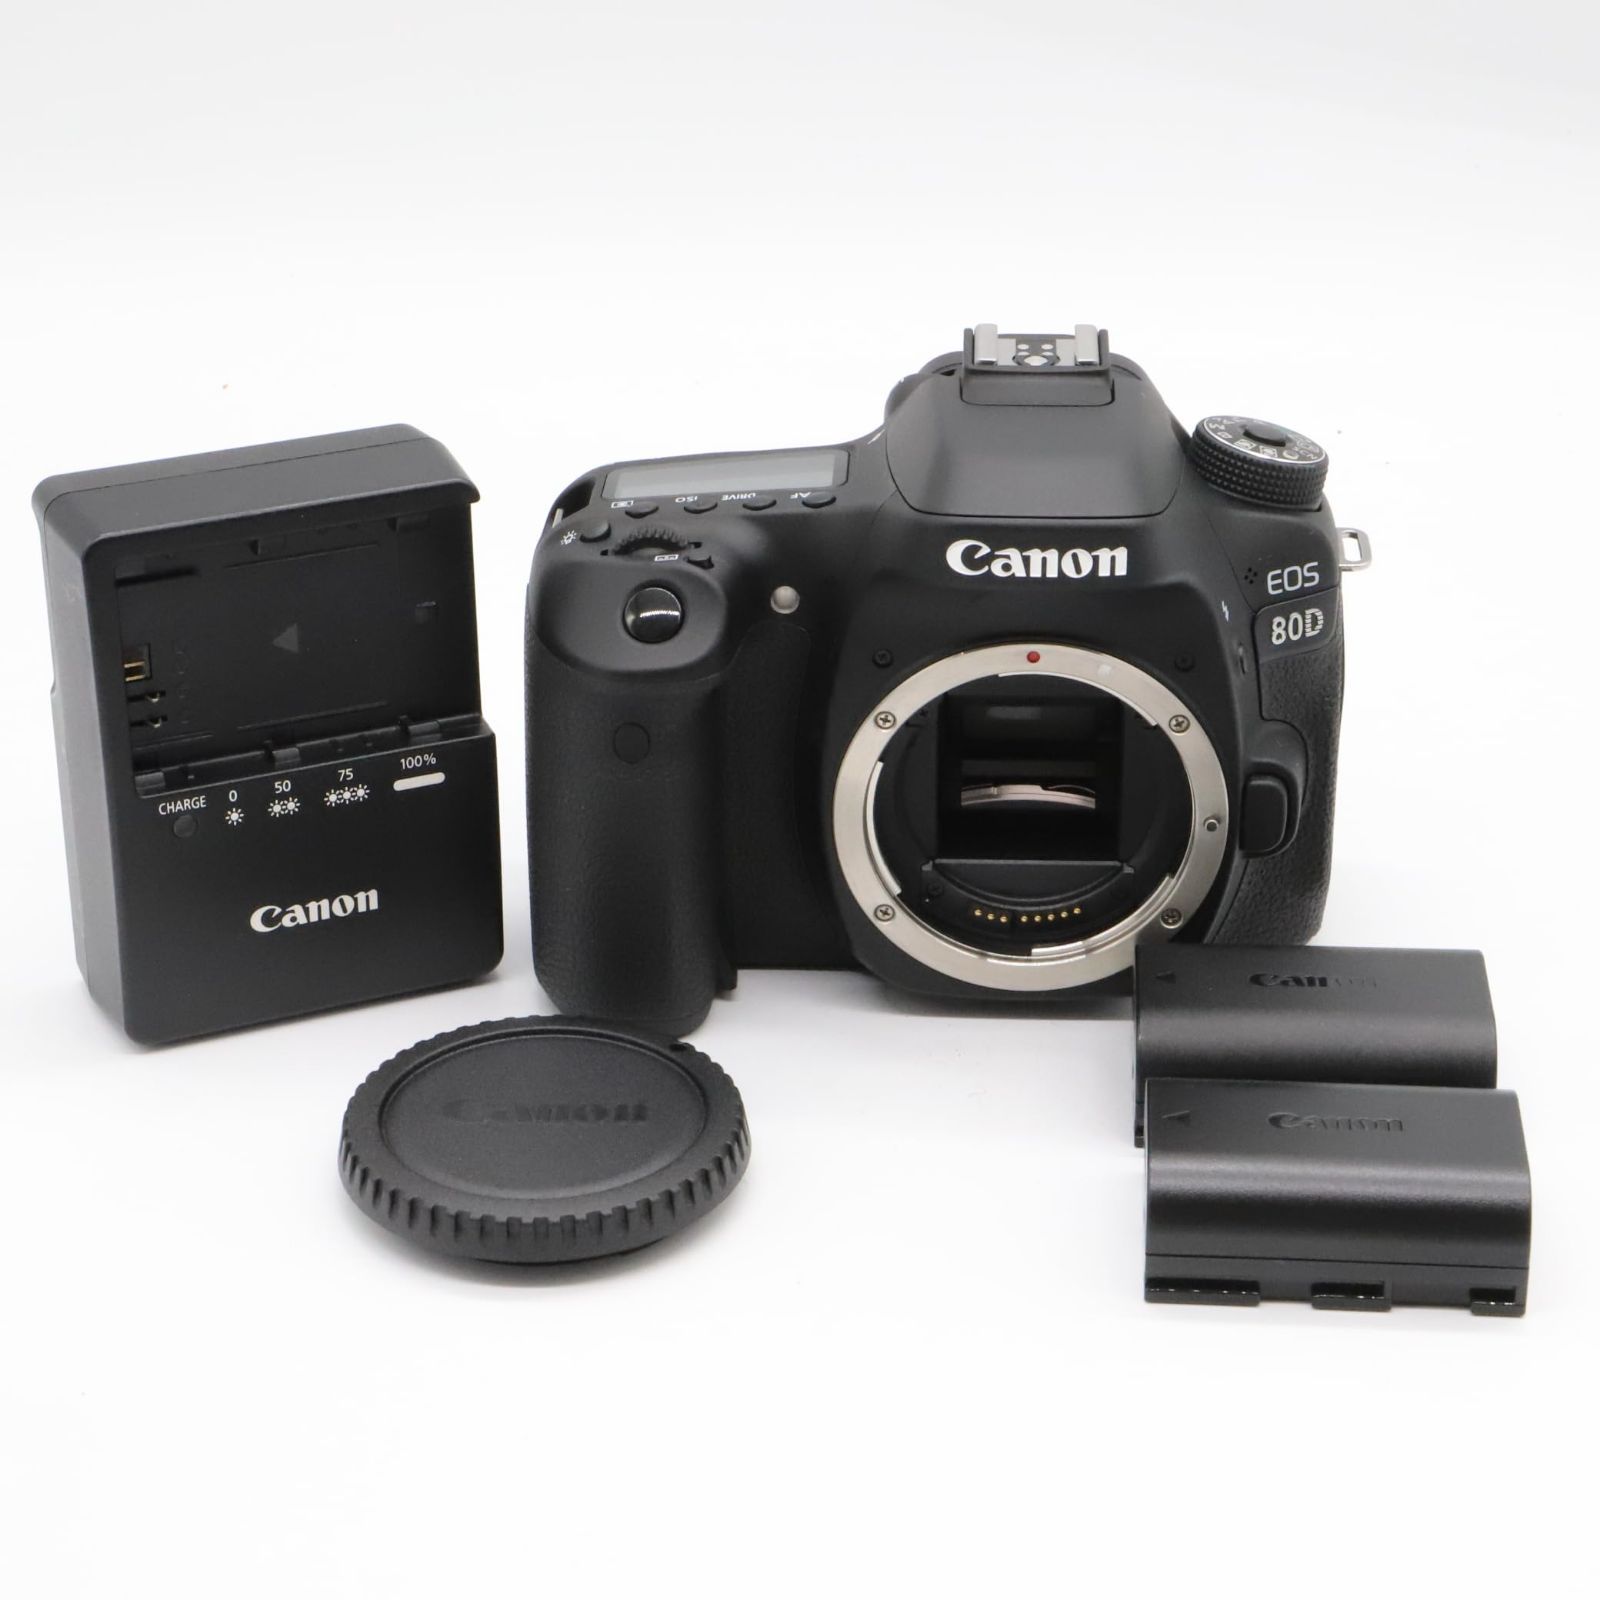 Canon デジタル一眼レフカメラ EOS 80D (W) ボディ | 150.illinois.edu